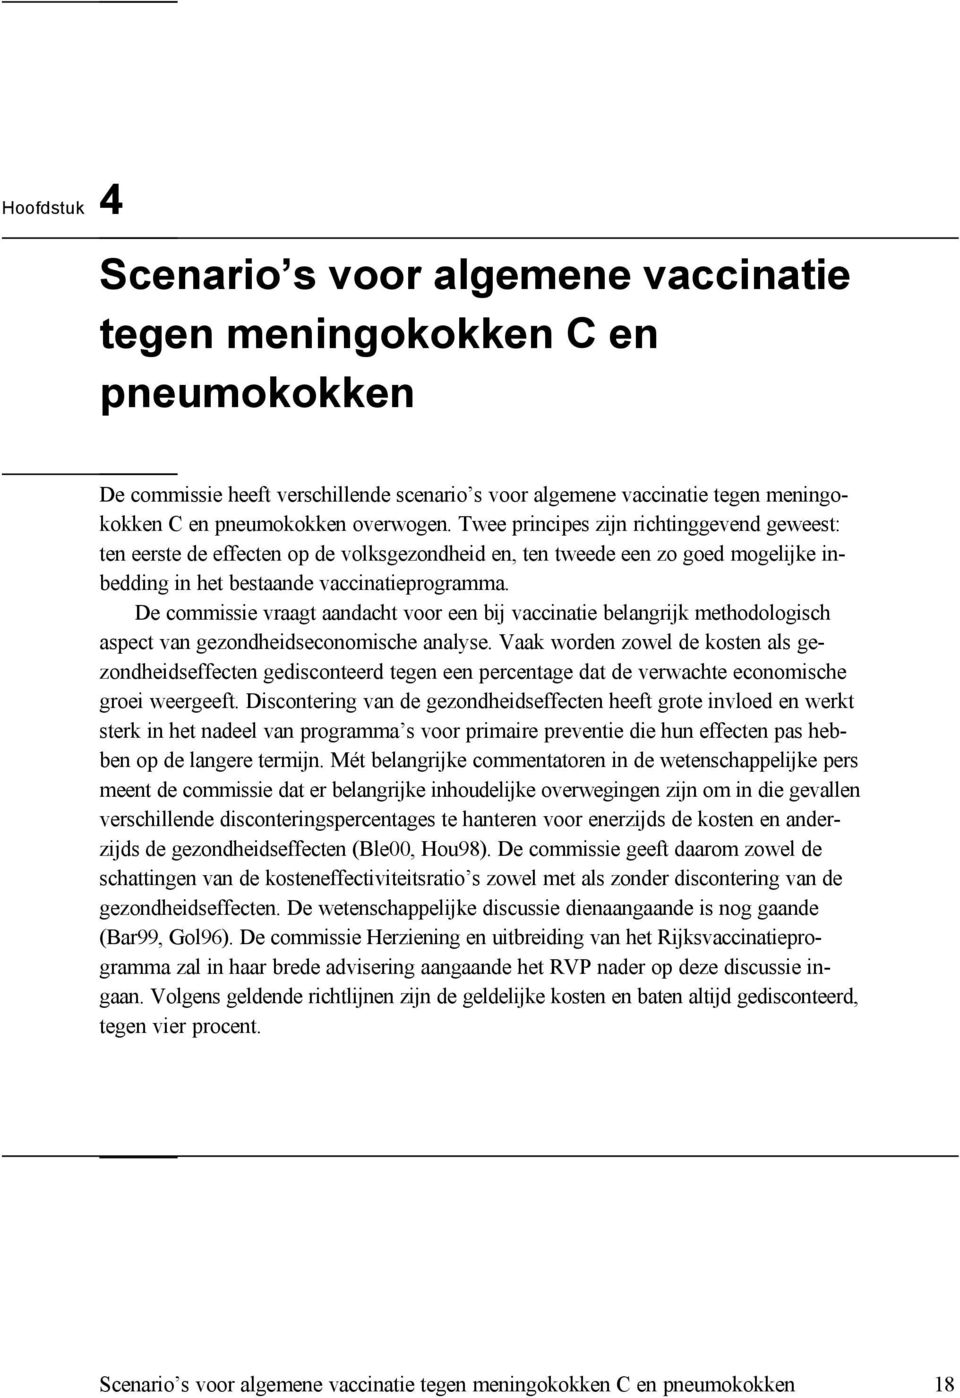 De commissie vraagt aandacht voor een bij vaccinatie belangrijk methodologisch aspect van gezondheidseconomische analyse.